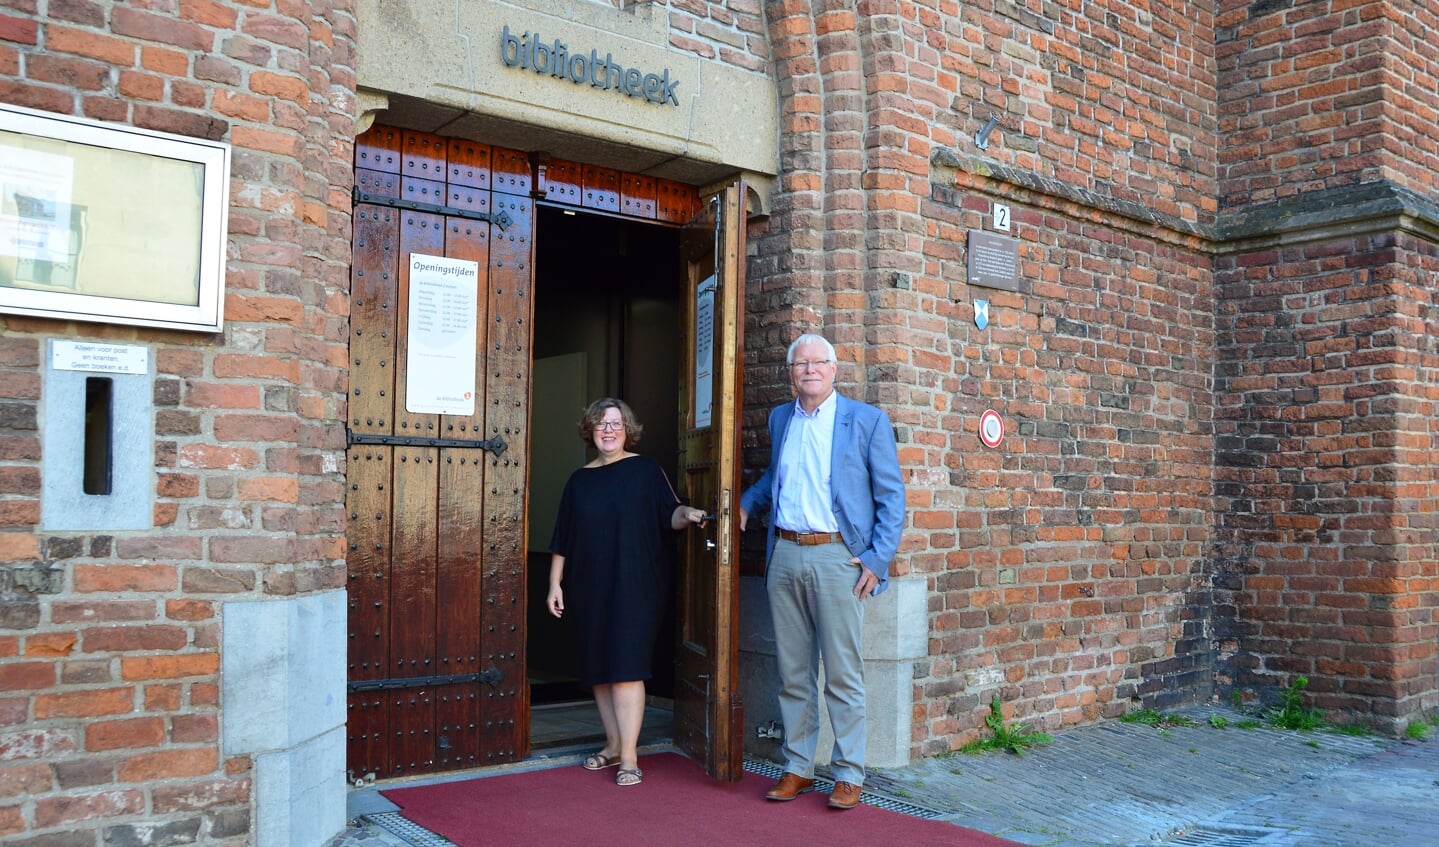 Gerard Huis in 't Veld directeur en Barbara Deuss, programmamanager Graafschap Bibliotheken voor de bieb in Zutphen. Foto: Alize Hillebrink 